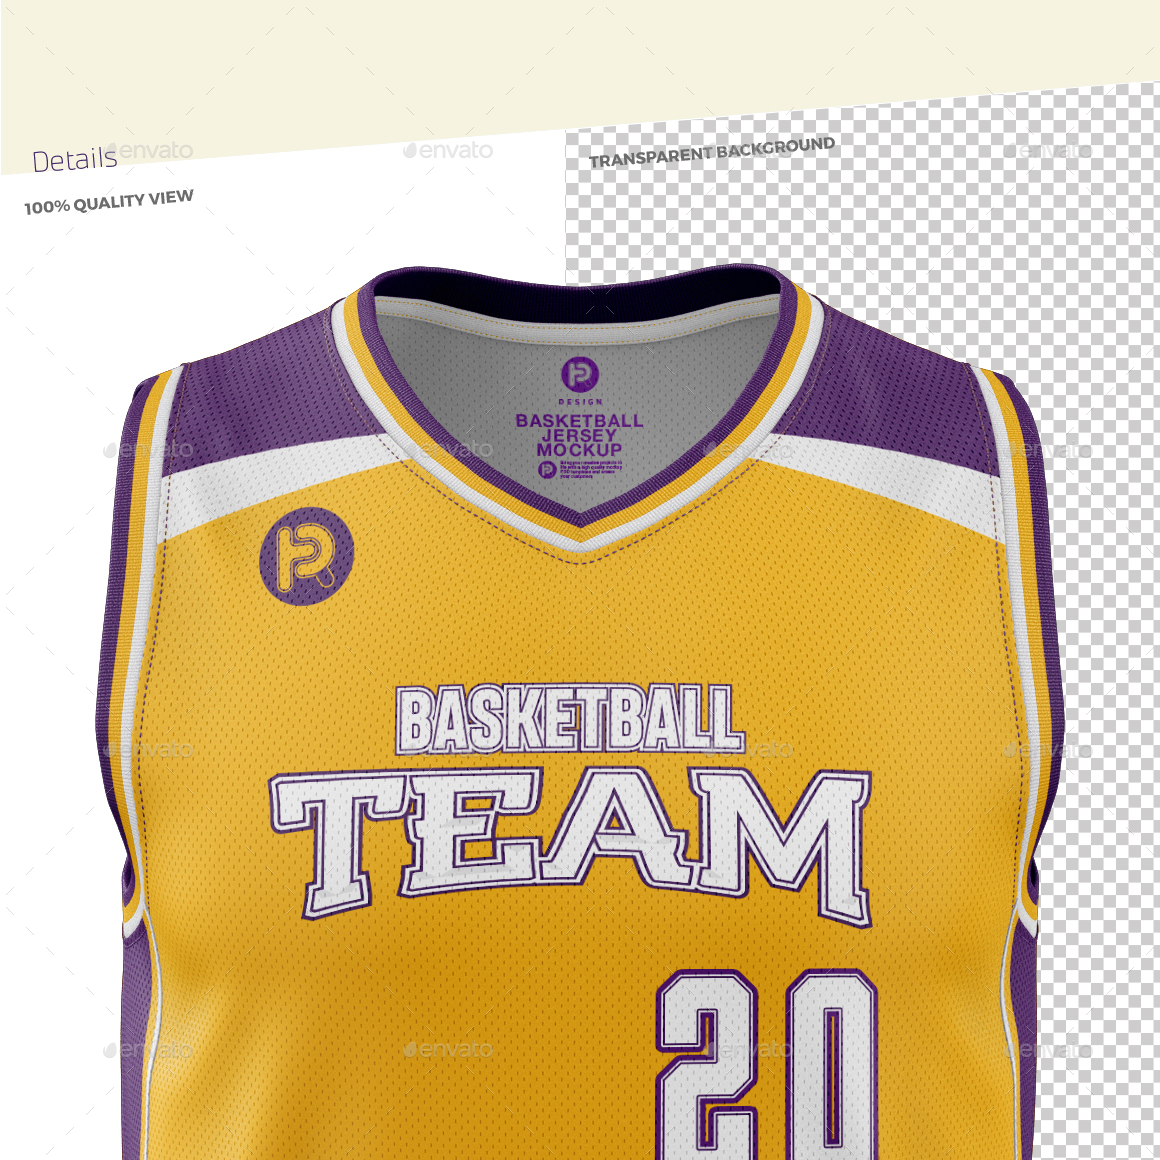 Download Men's V-Neck Basketball Jersey Mockup by TRDesignme | GraphicRiver